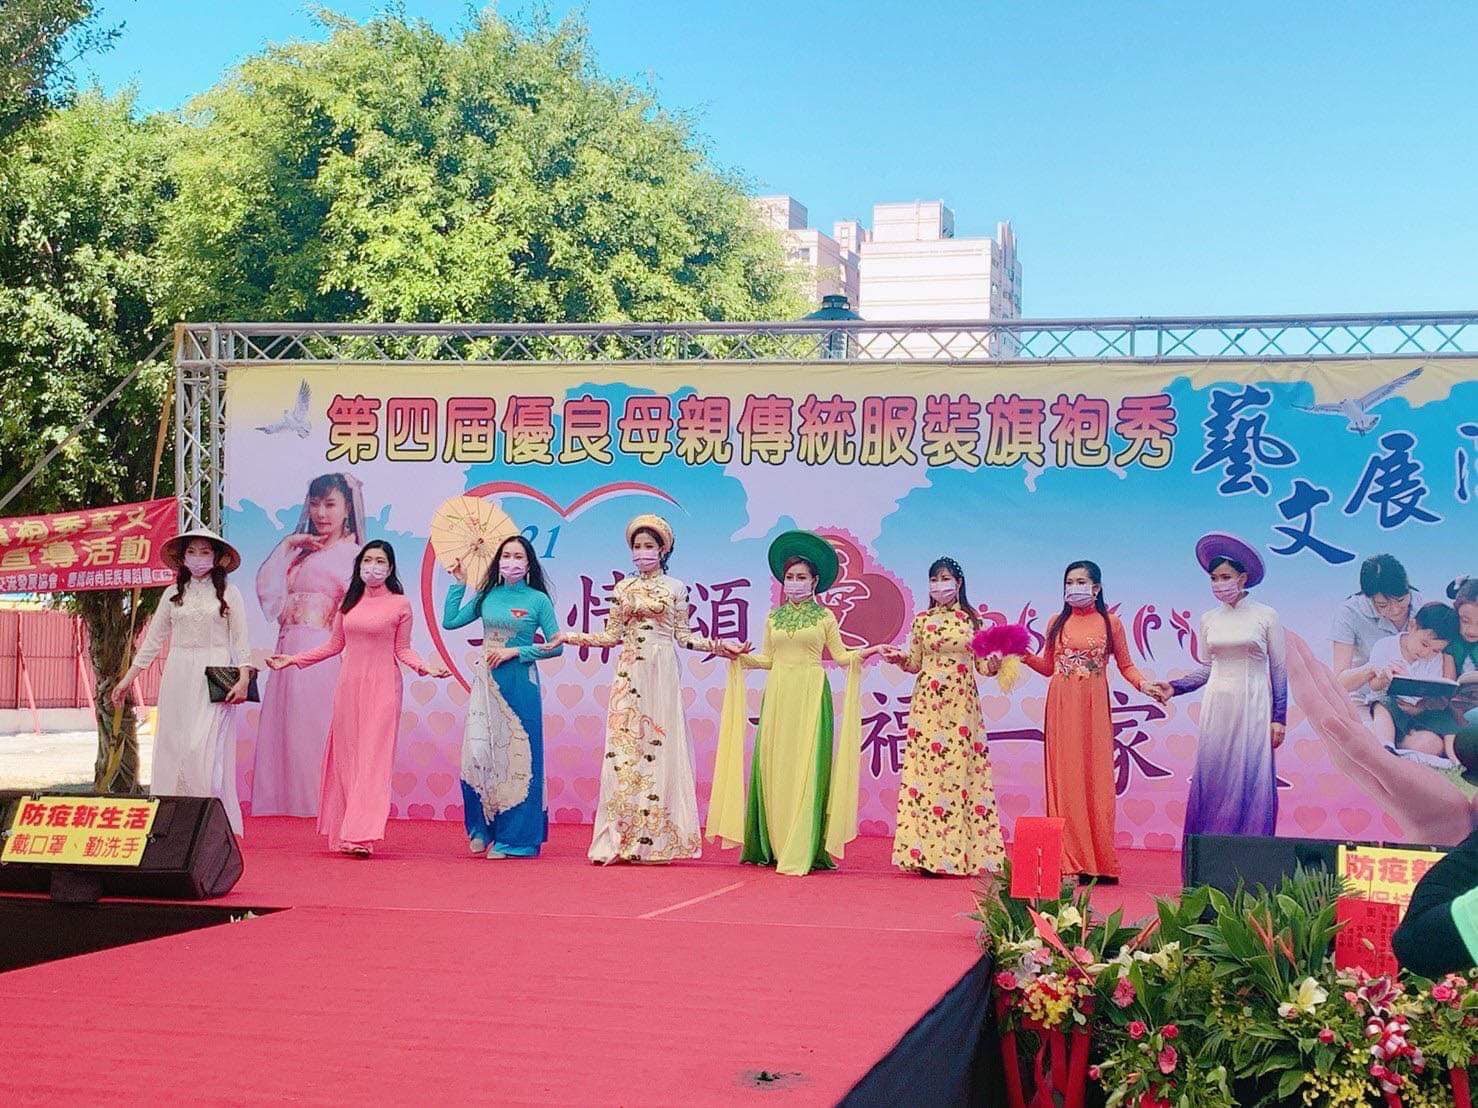 Đào Viên tổ chức hoạt động giao lưu văn hóa nghệ thuật và trình diễn trang phục truyền thống. (Nguồn ảnh: Facebook)